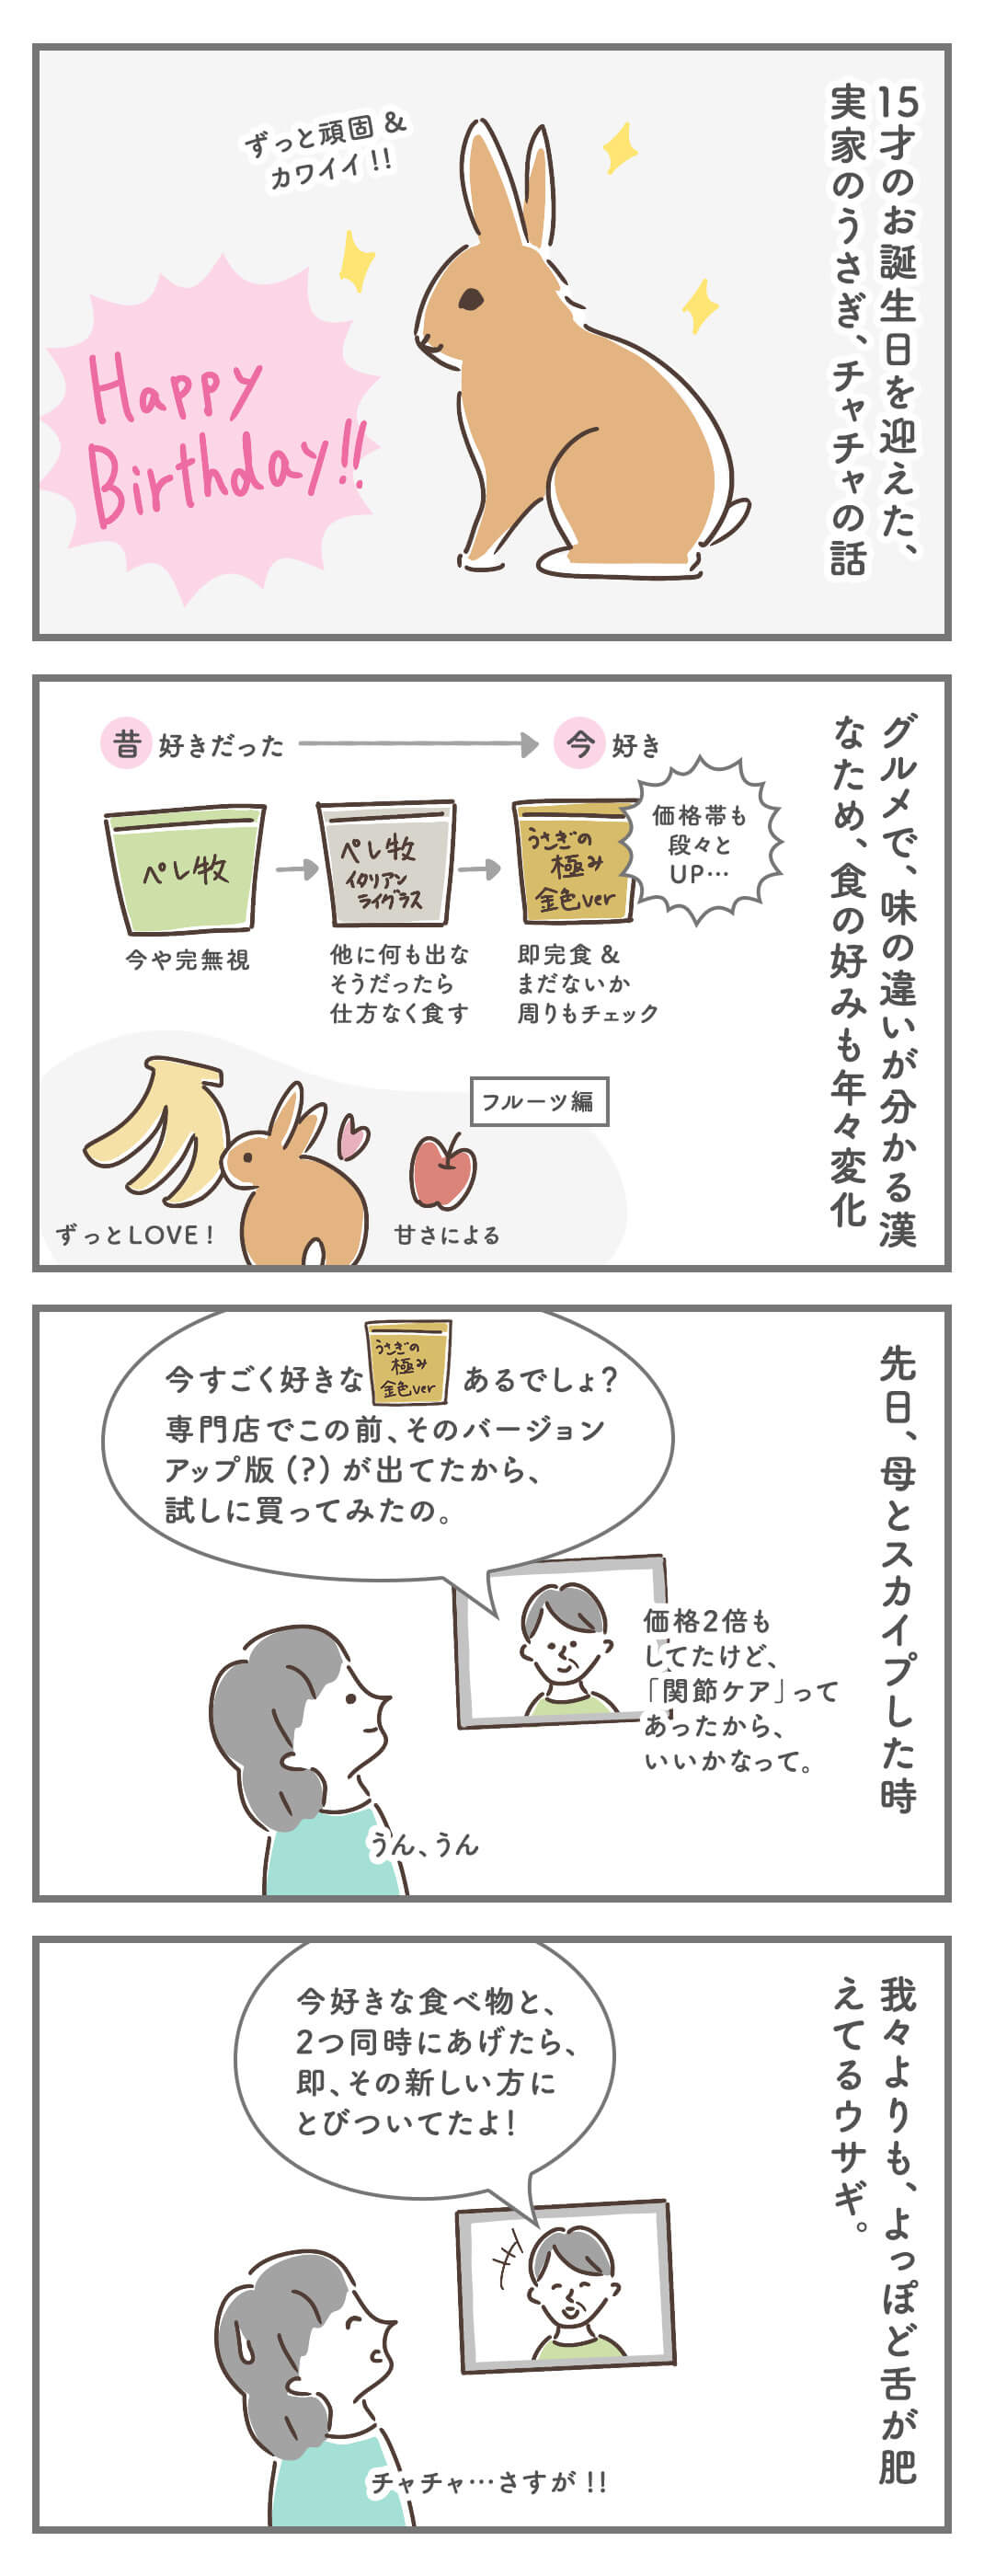 イギリス四コマ漫画 :﻿うさぎのチャチャ、ハッピーバースデー、15才! 〜食べ物編